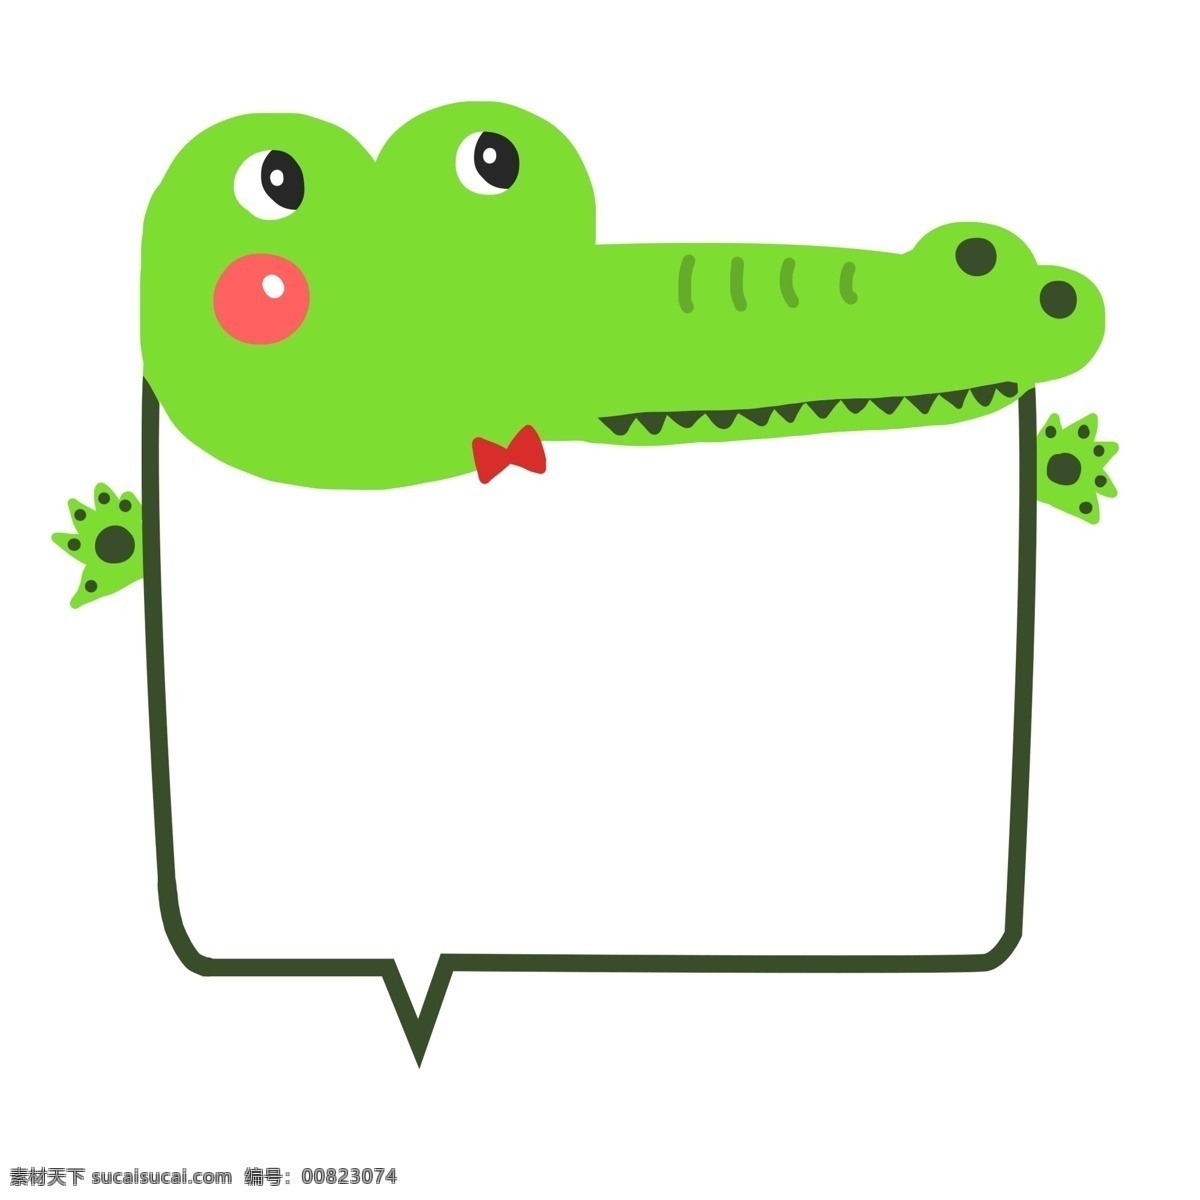 手绘 小 动物 鳄鱼 边框 手绘鳄鱼边框 可爱边框 小动物 文本框 对话框 方形框 绿色边框 卡通边框